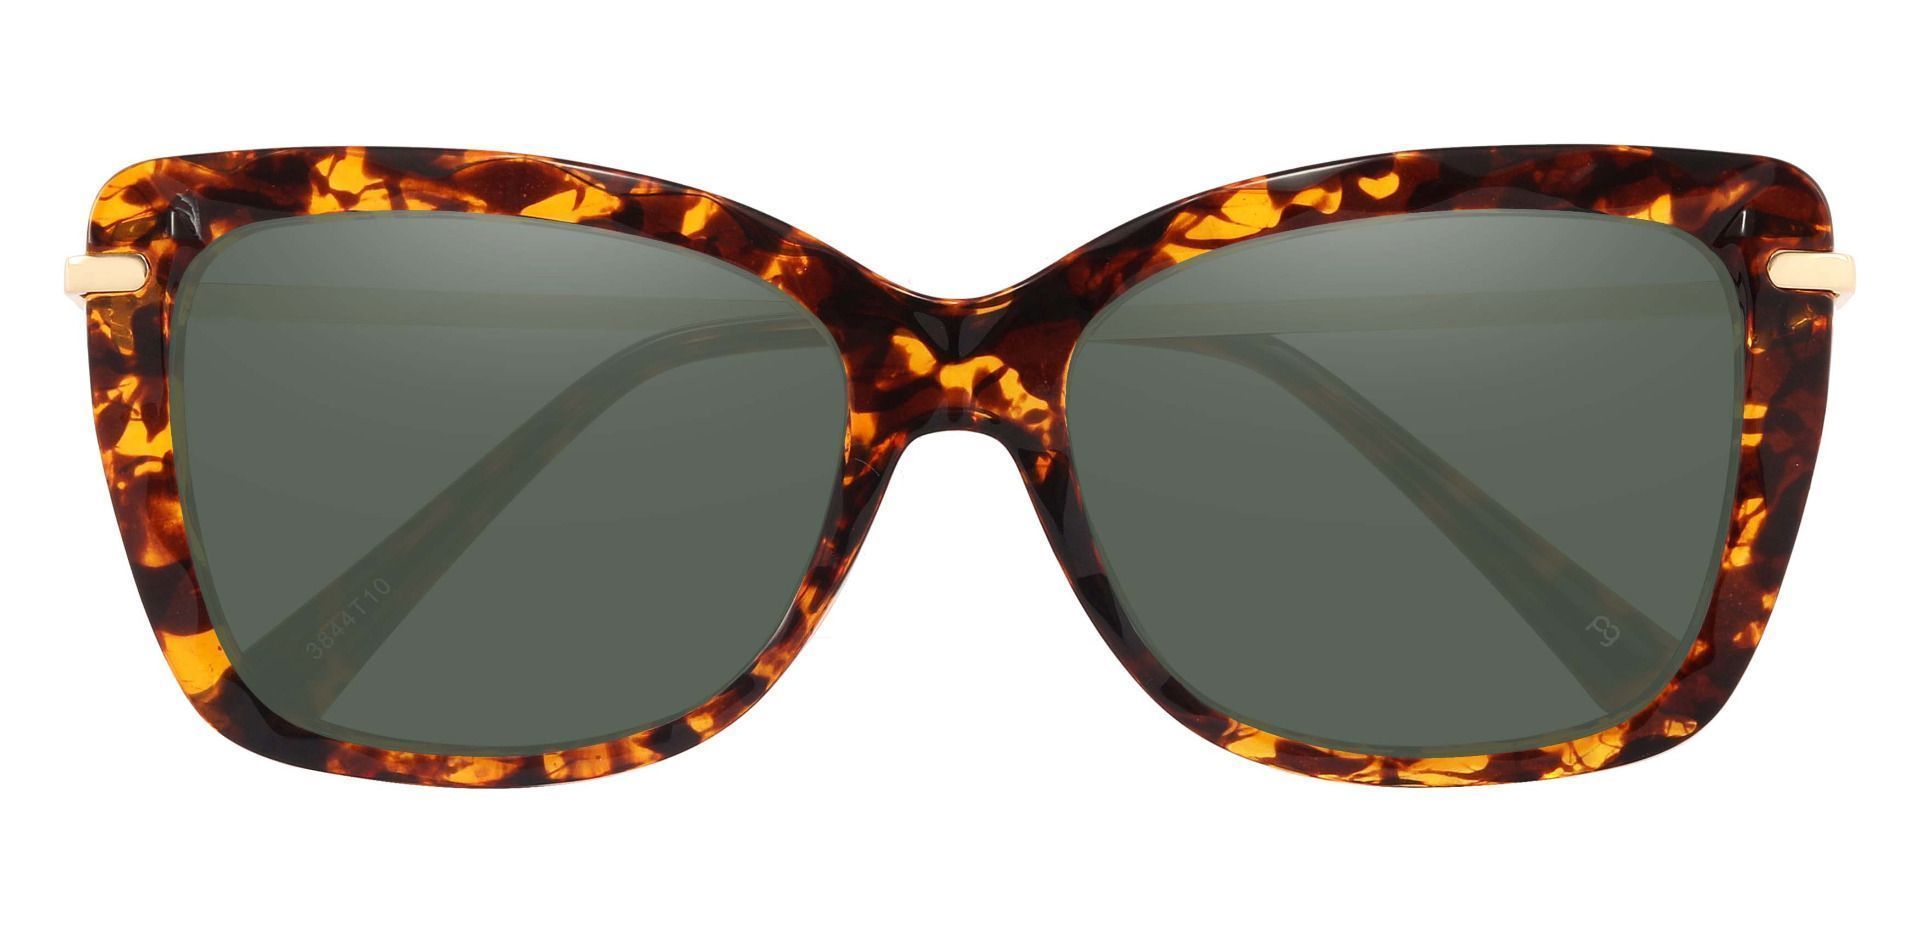 Shoshanna Rectangle Reading Sunglasses - Tortoise Frame With Green Lenses